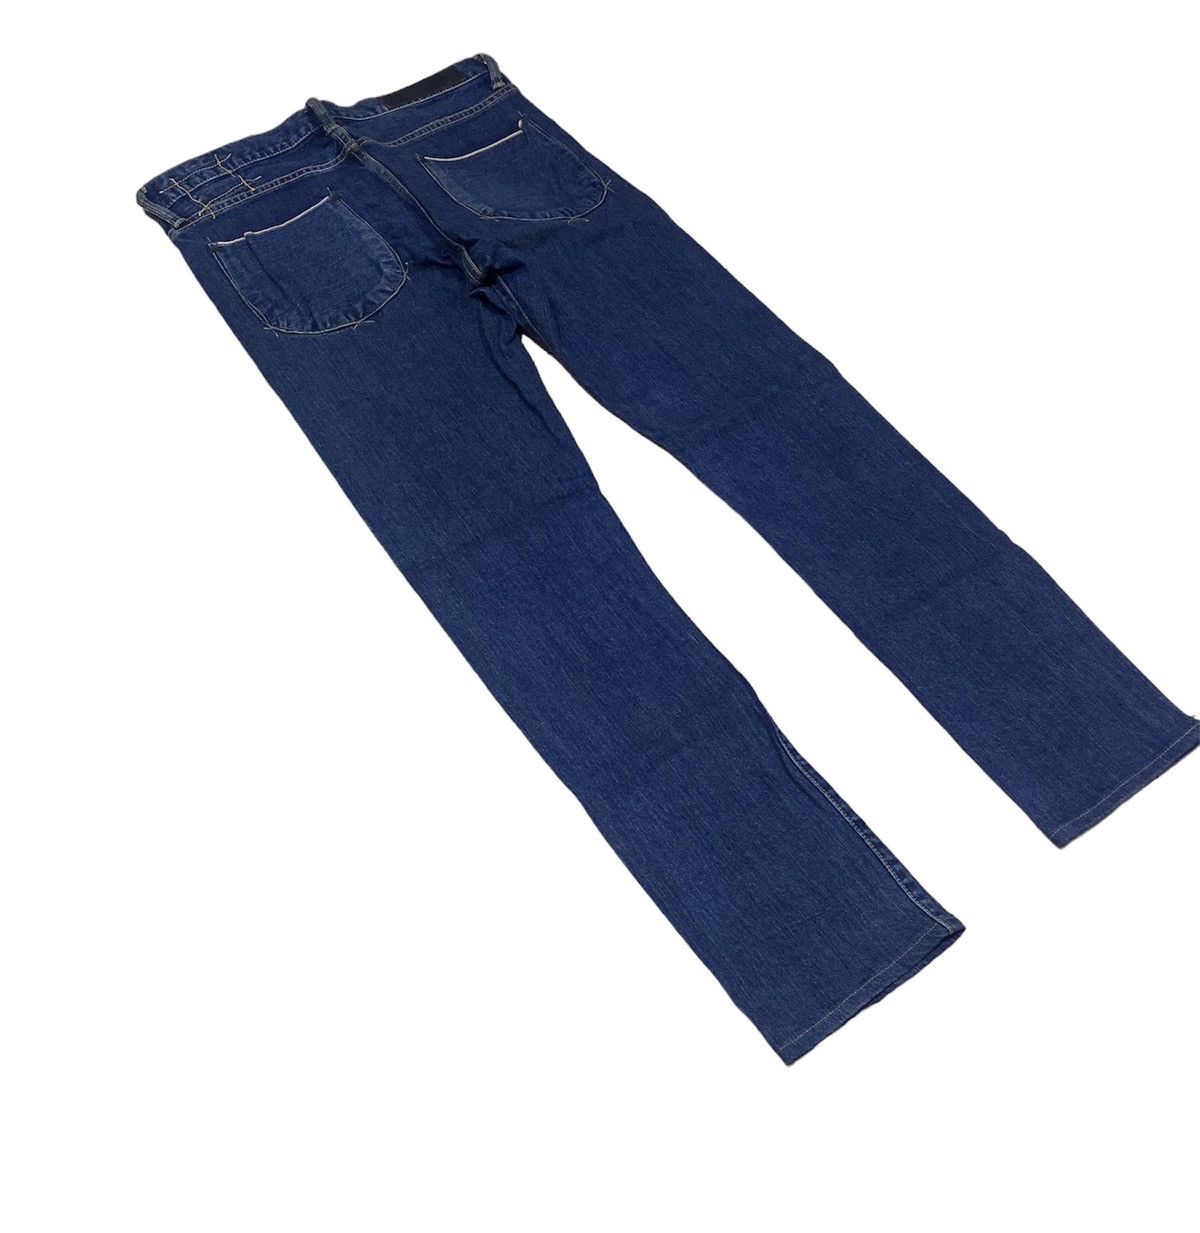 KURO Diamante Japanese Selvedge Denim Jeans - 4